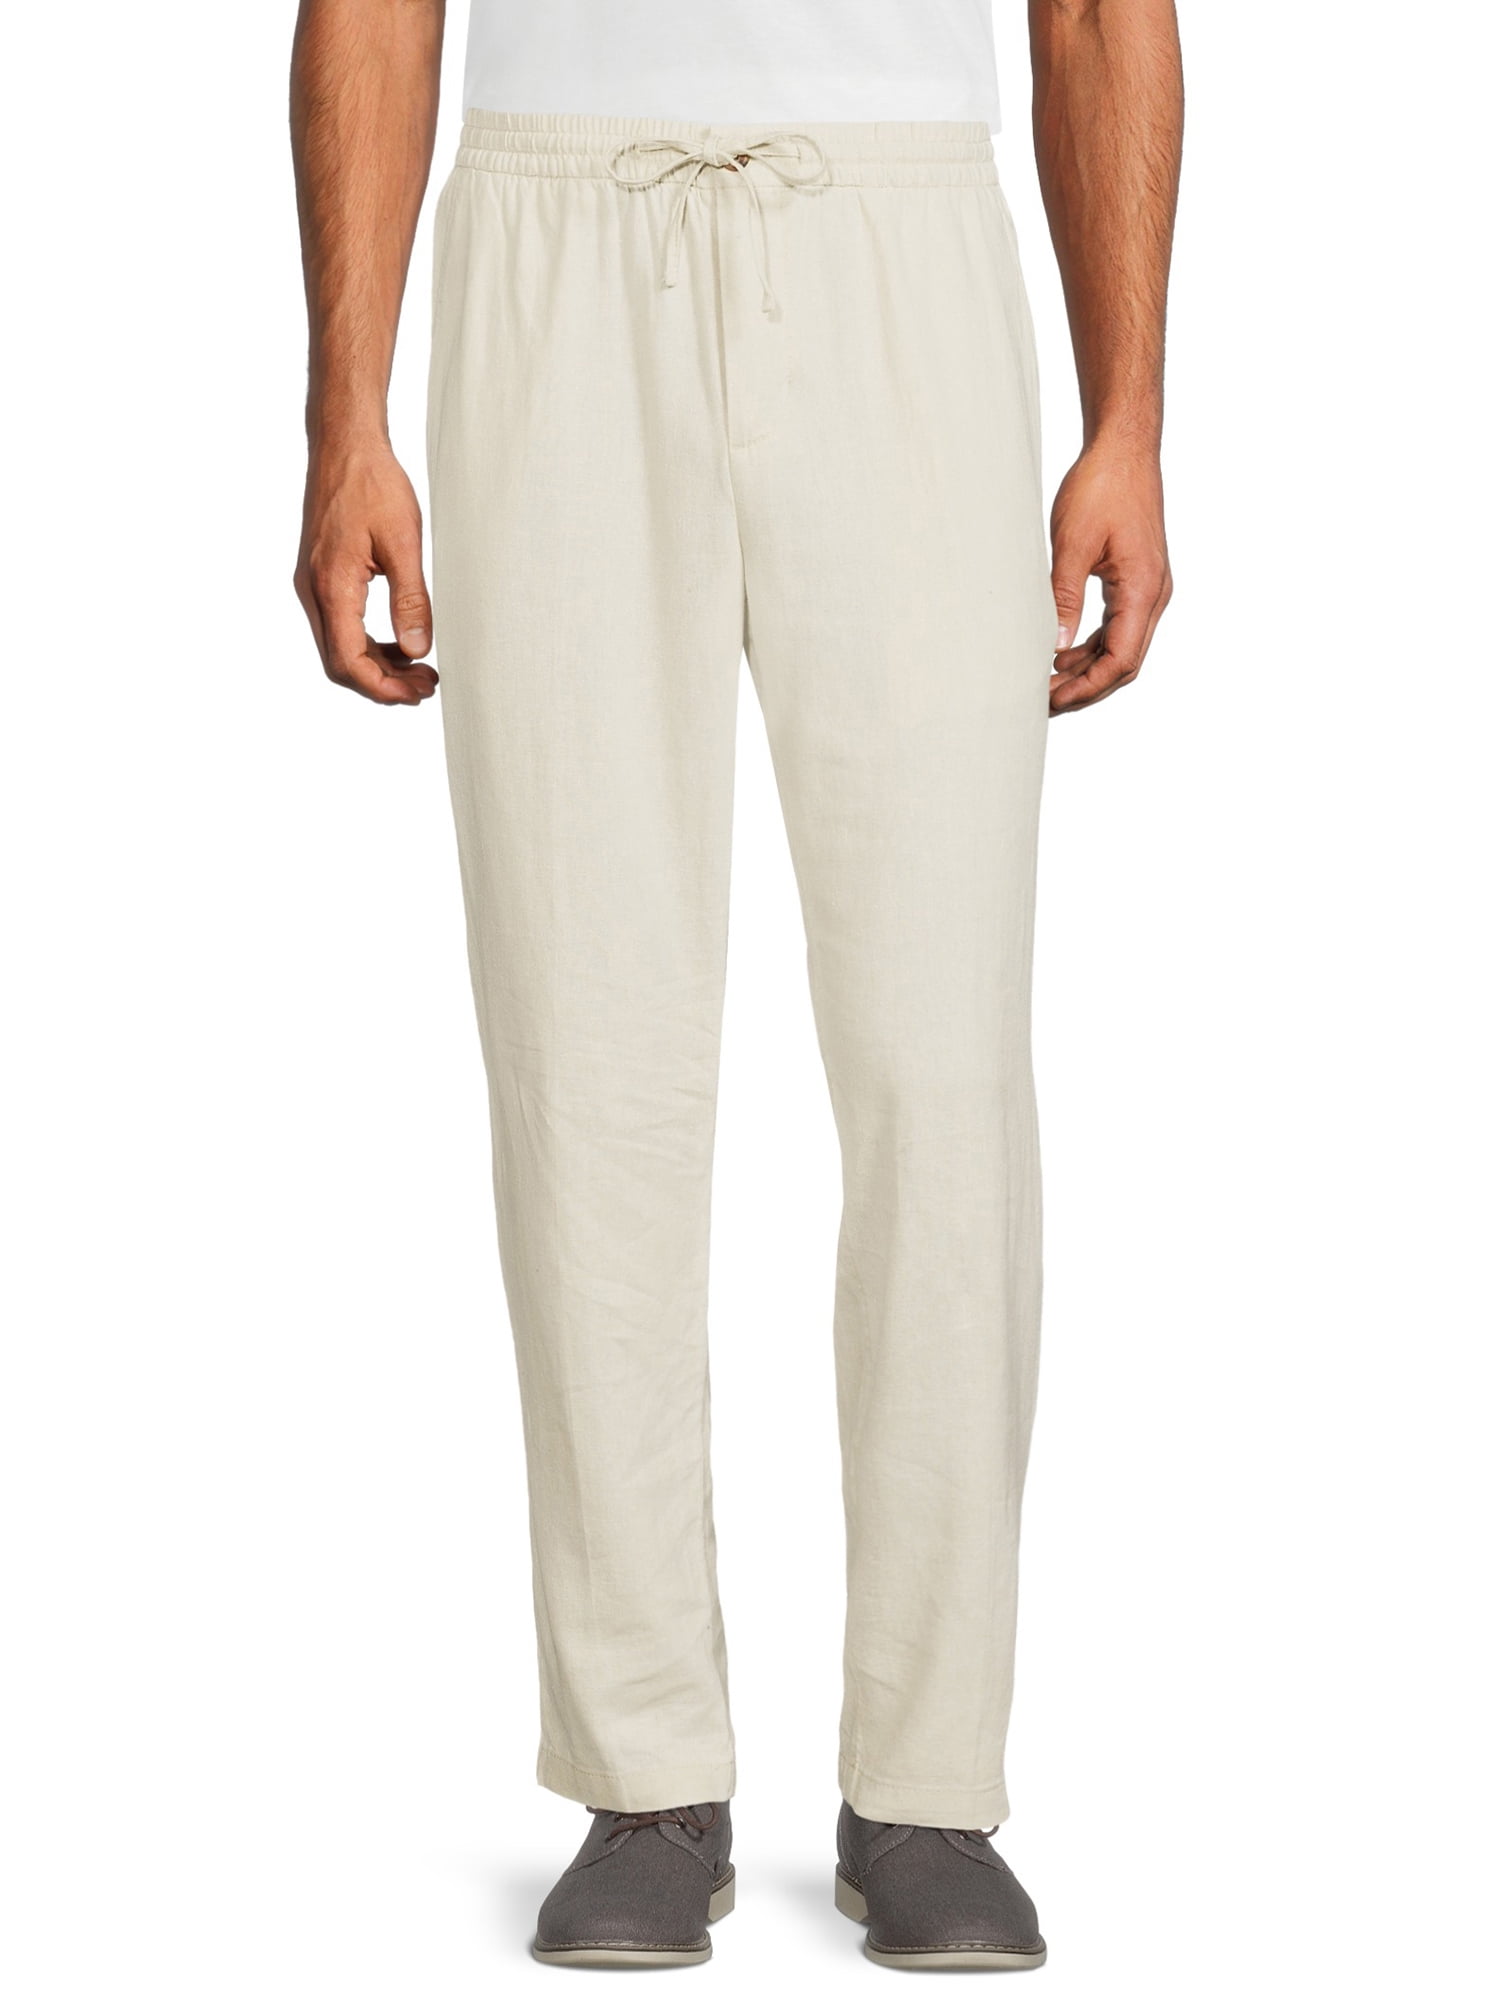 Men Hip hop Style Cotton Linen Trousers Soft Breathable Solid Color Long  Pants  Walmartcom